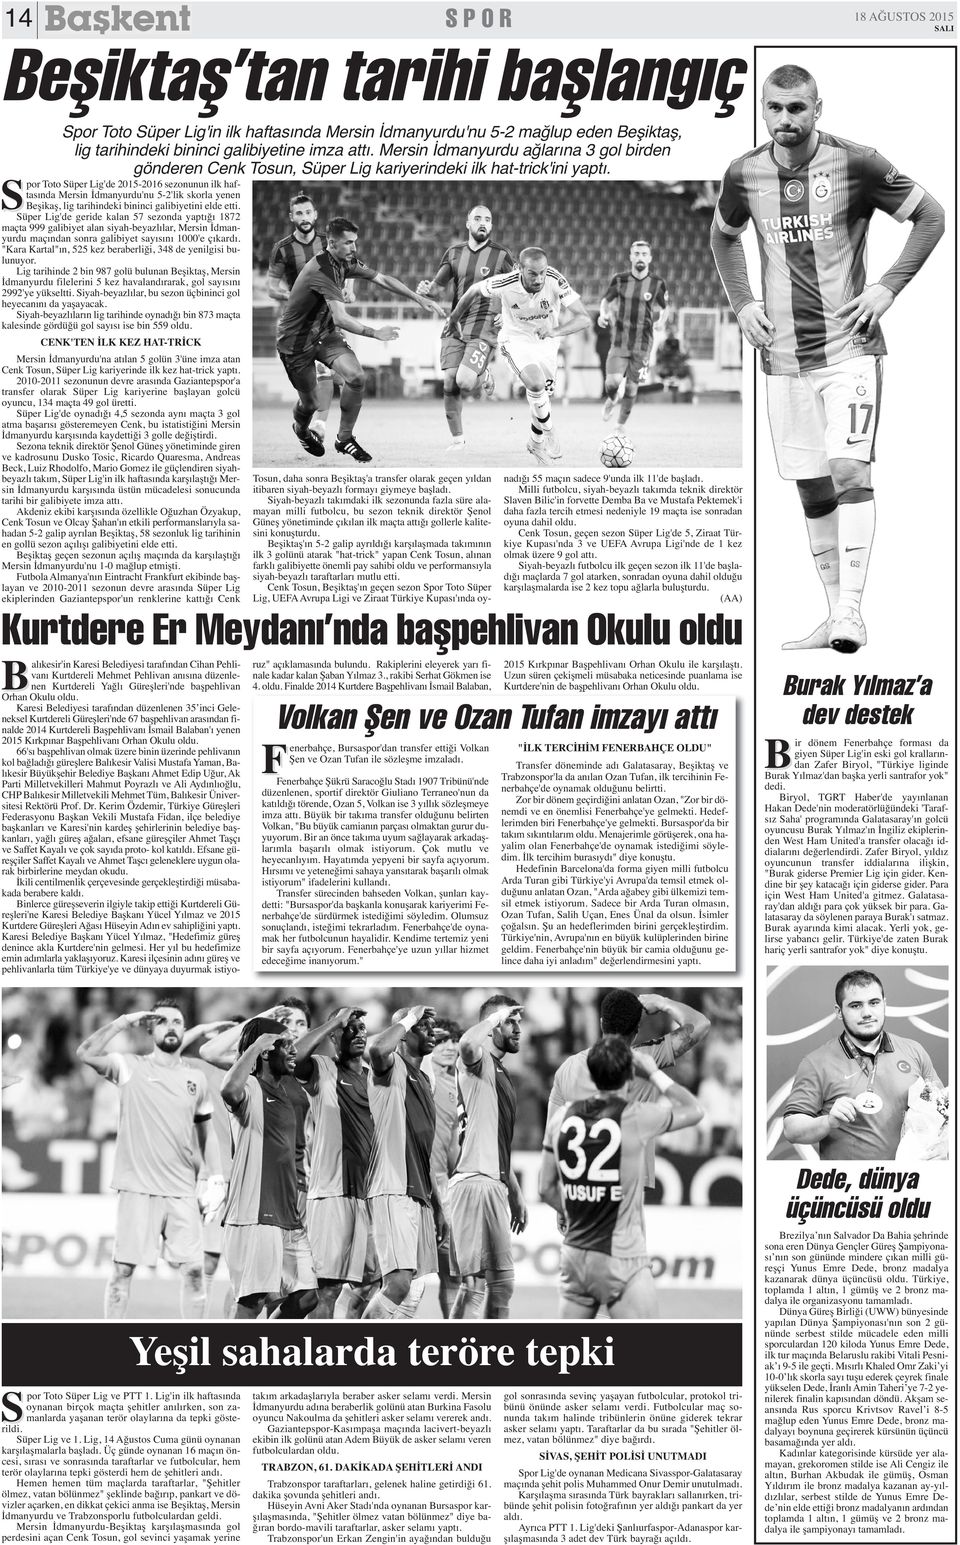 Spor Toto Süper Lig'de 2015-2016 sezonunun ilk haftasında Mersin İdmanyurdu'nu 5-2'lik skorla yenen Beşikaş, lig tarihindeki bininci galibiyetini elde etti.